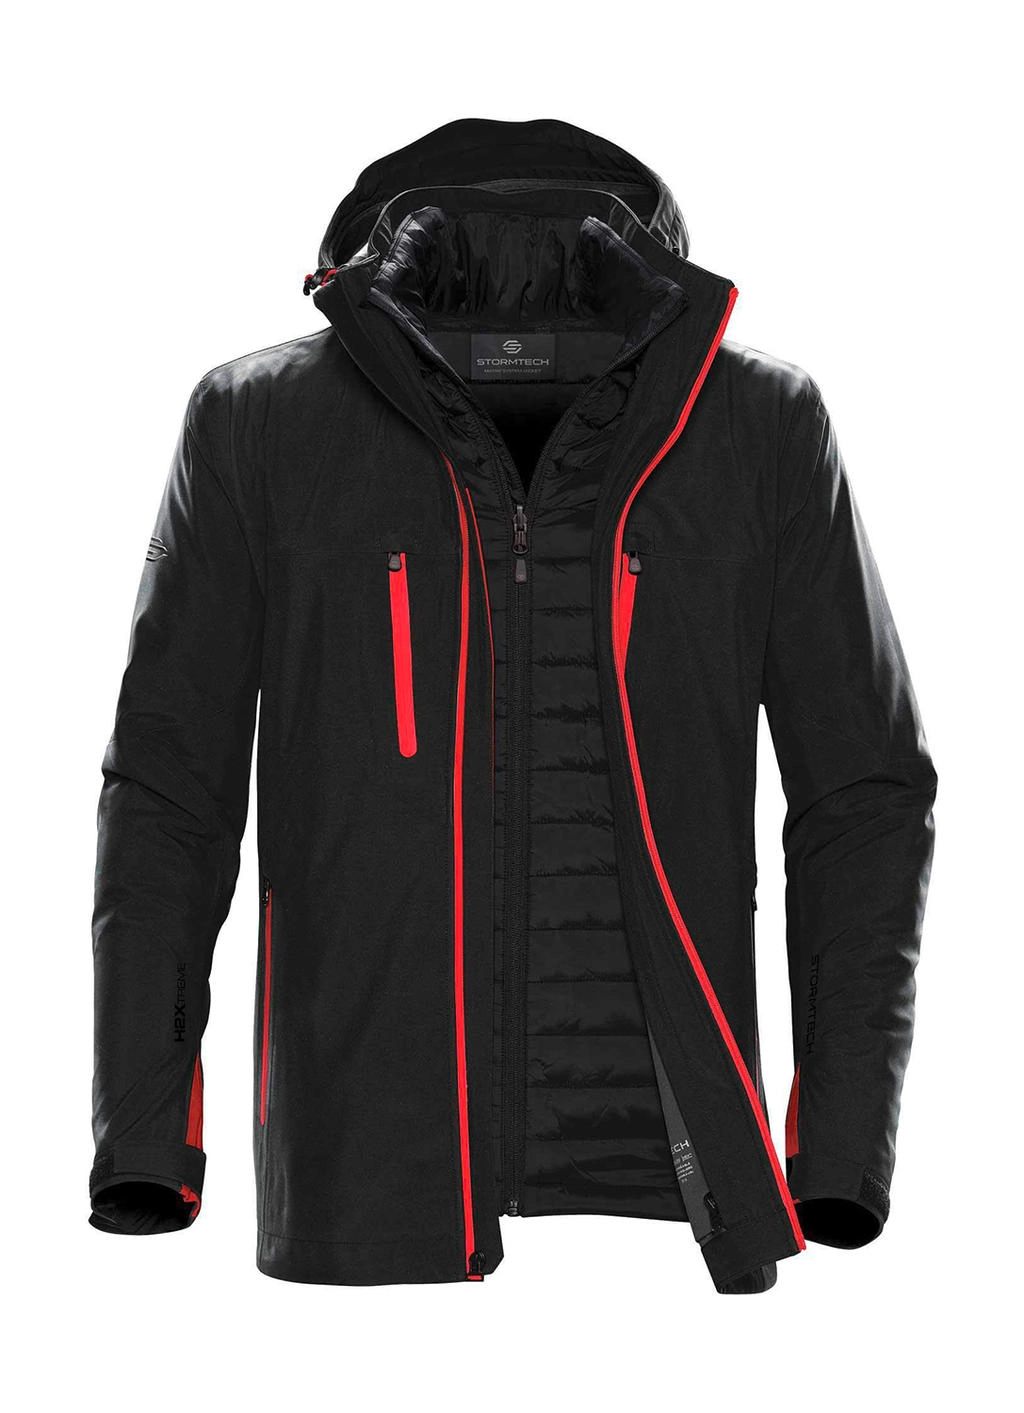 Men`s Matrix System Jacket zum Besticken und Bedrucken in der Farbe Black/Bright Red mit Ihren Logo, Schriftzug oder Motiv.